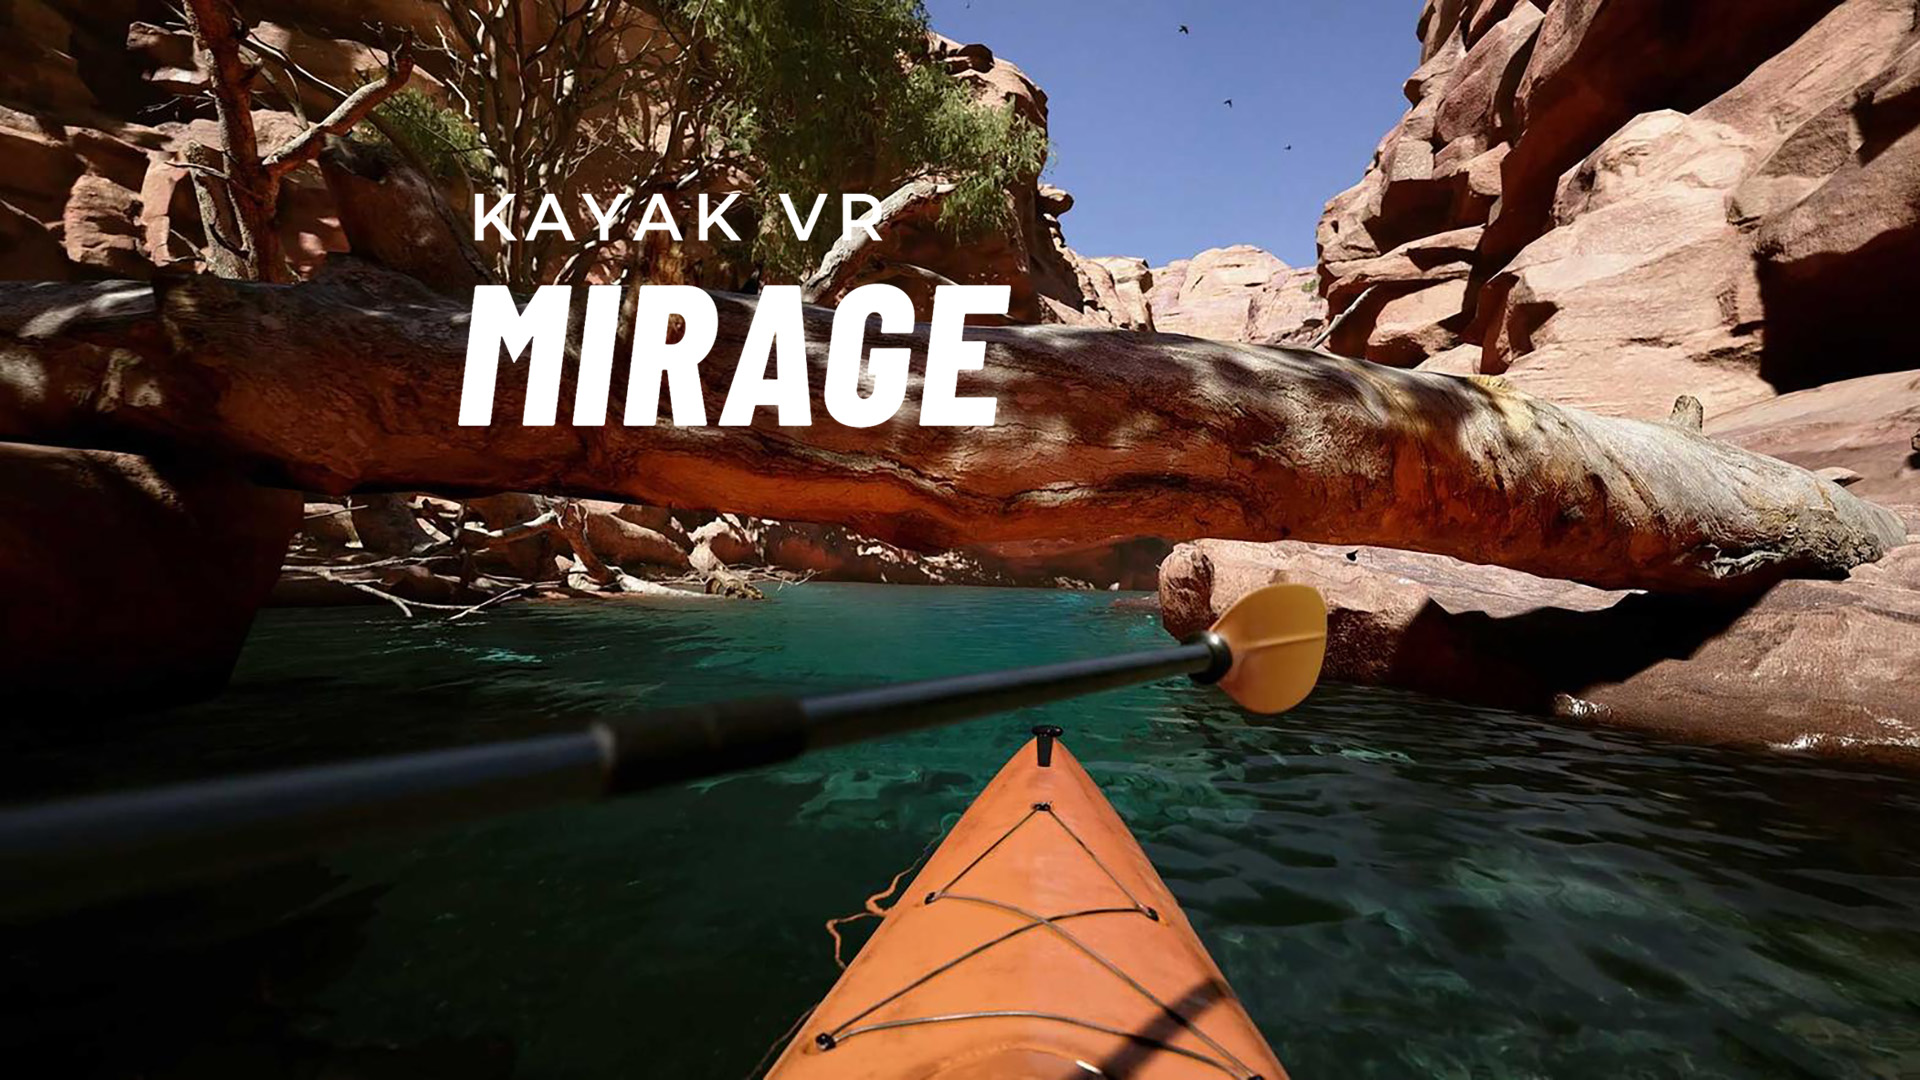 Kayak VR: Mirage czyli K jak Krzysztof